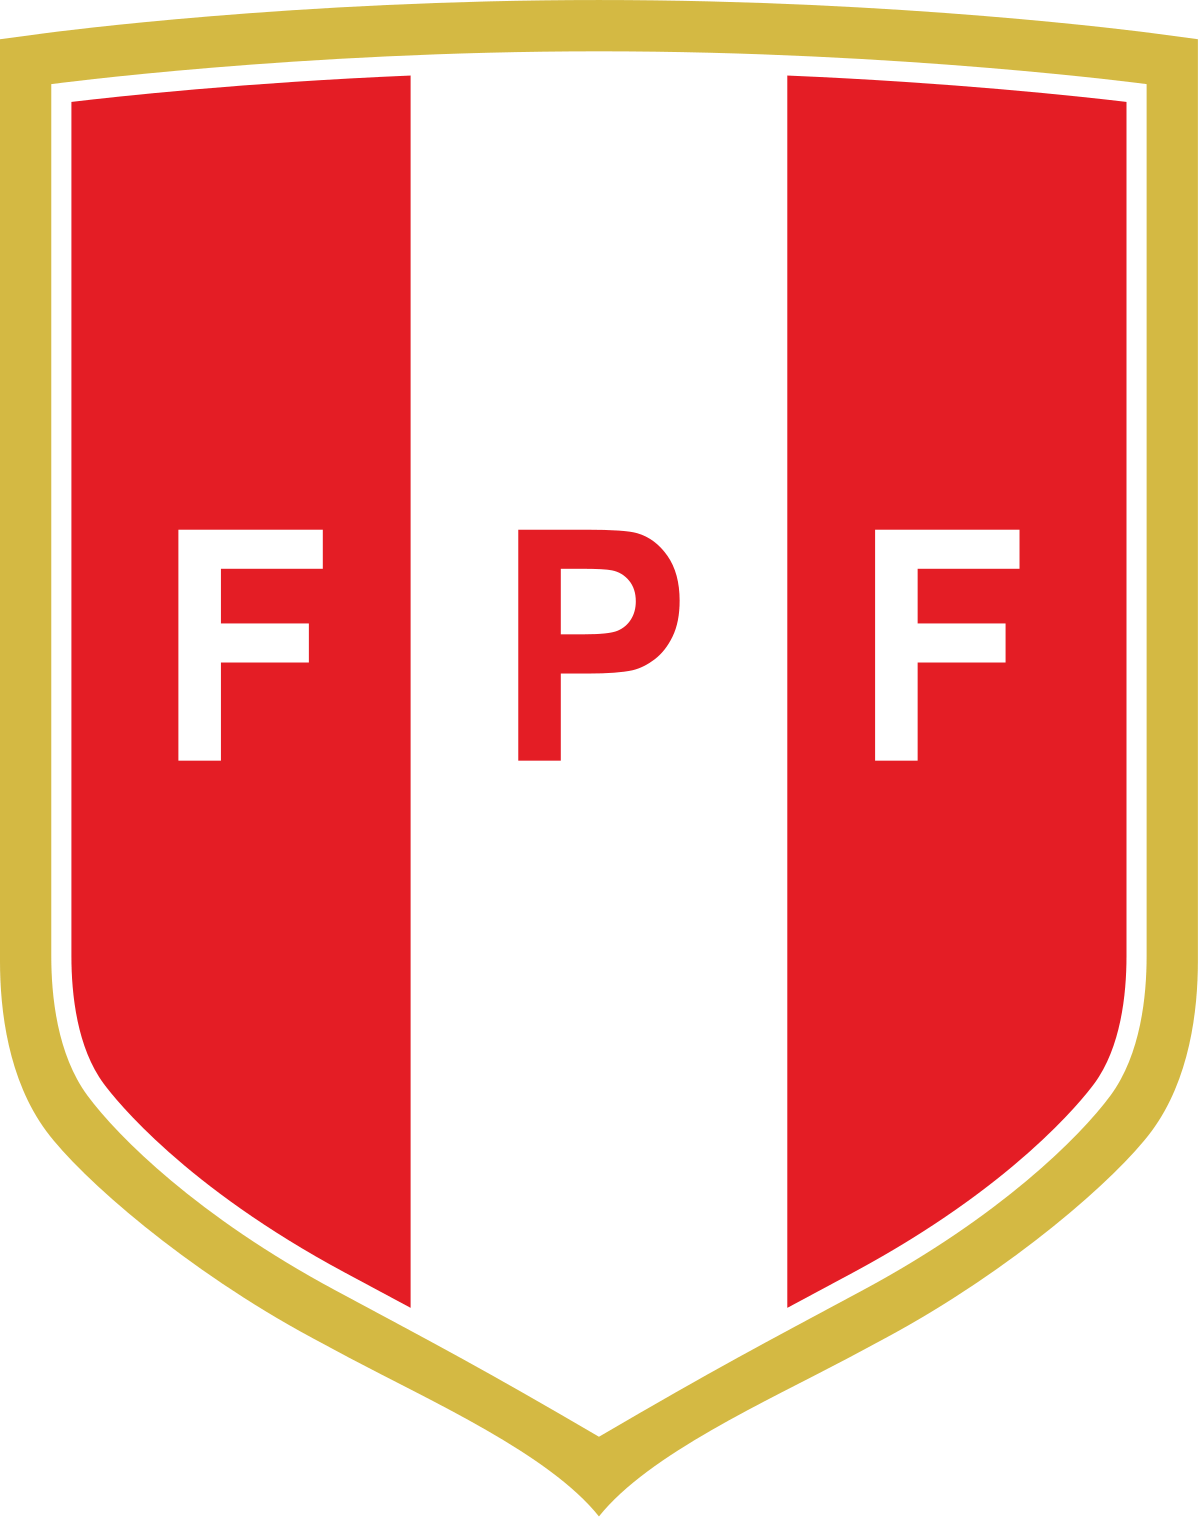 Peru Umbro Logo - Peru national football team